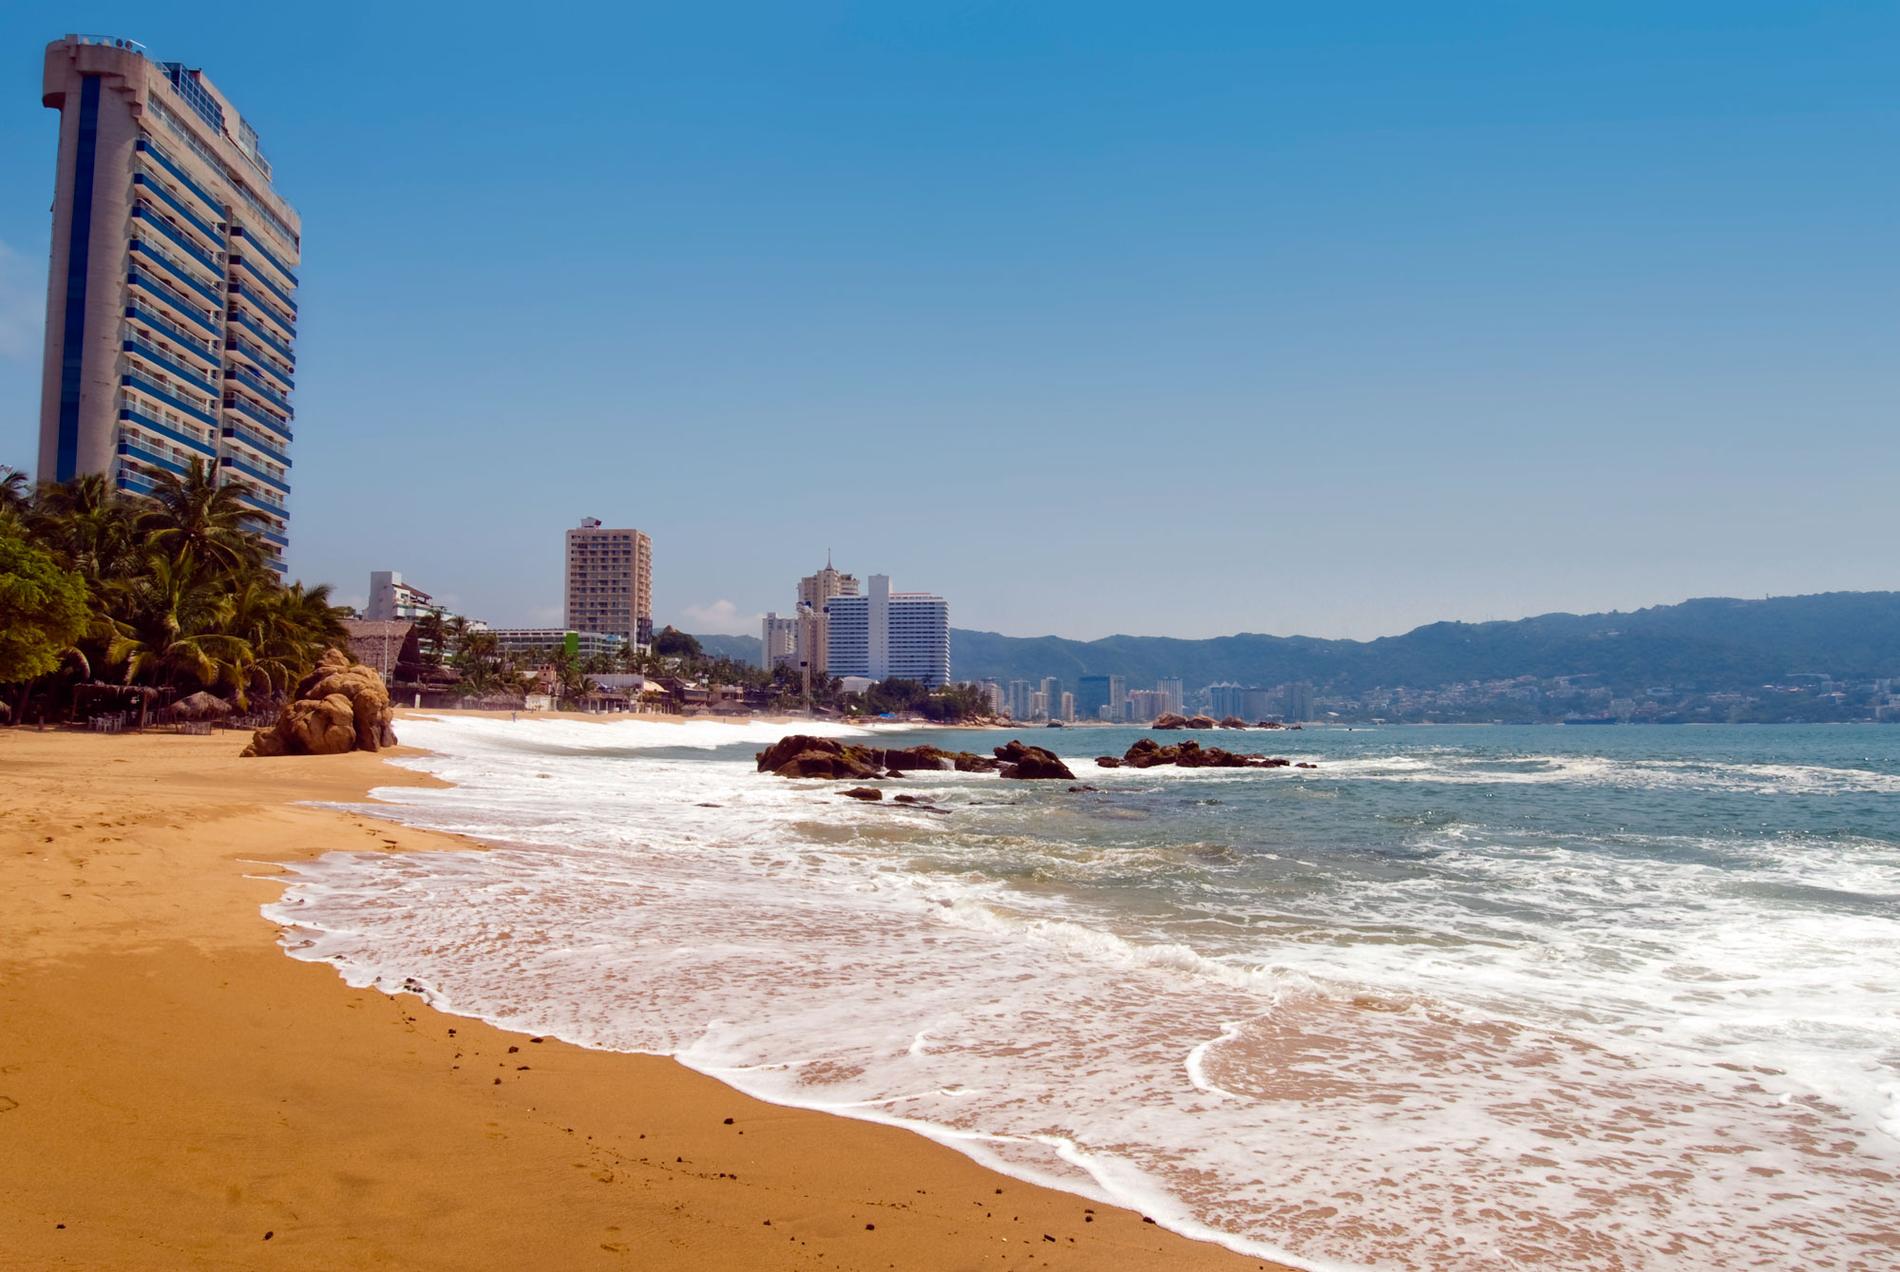 Acapulco är ett av Mexikos mest klassiska turistresmål och blev en favorit för Hollywoods stjärnor redan på 1950-talet.